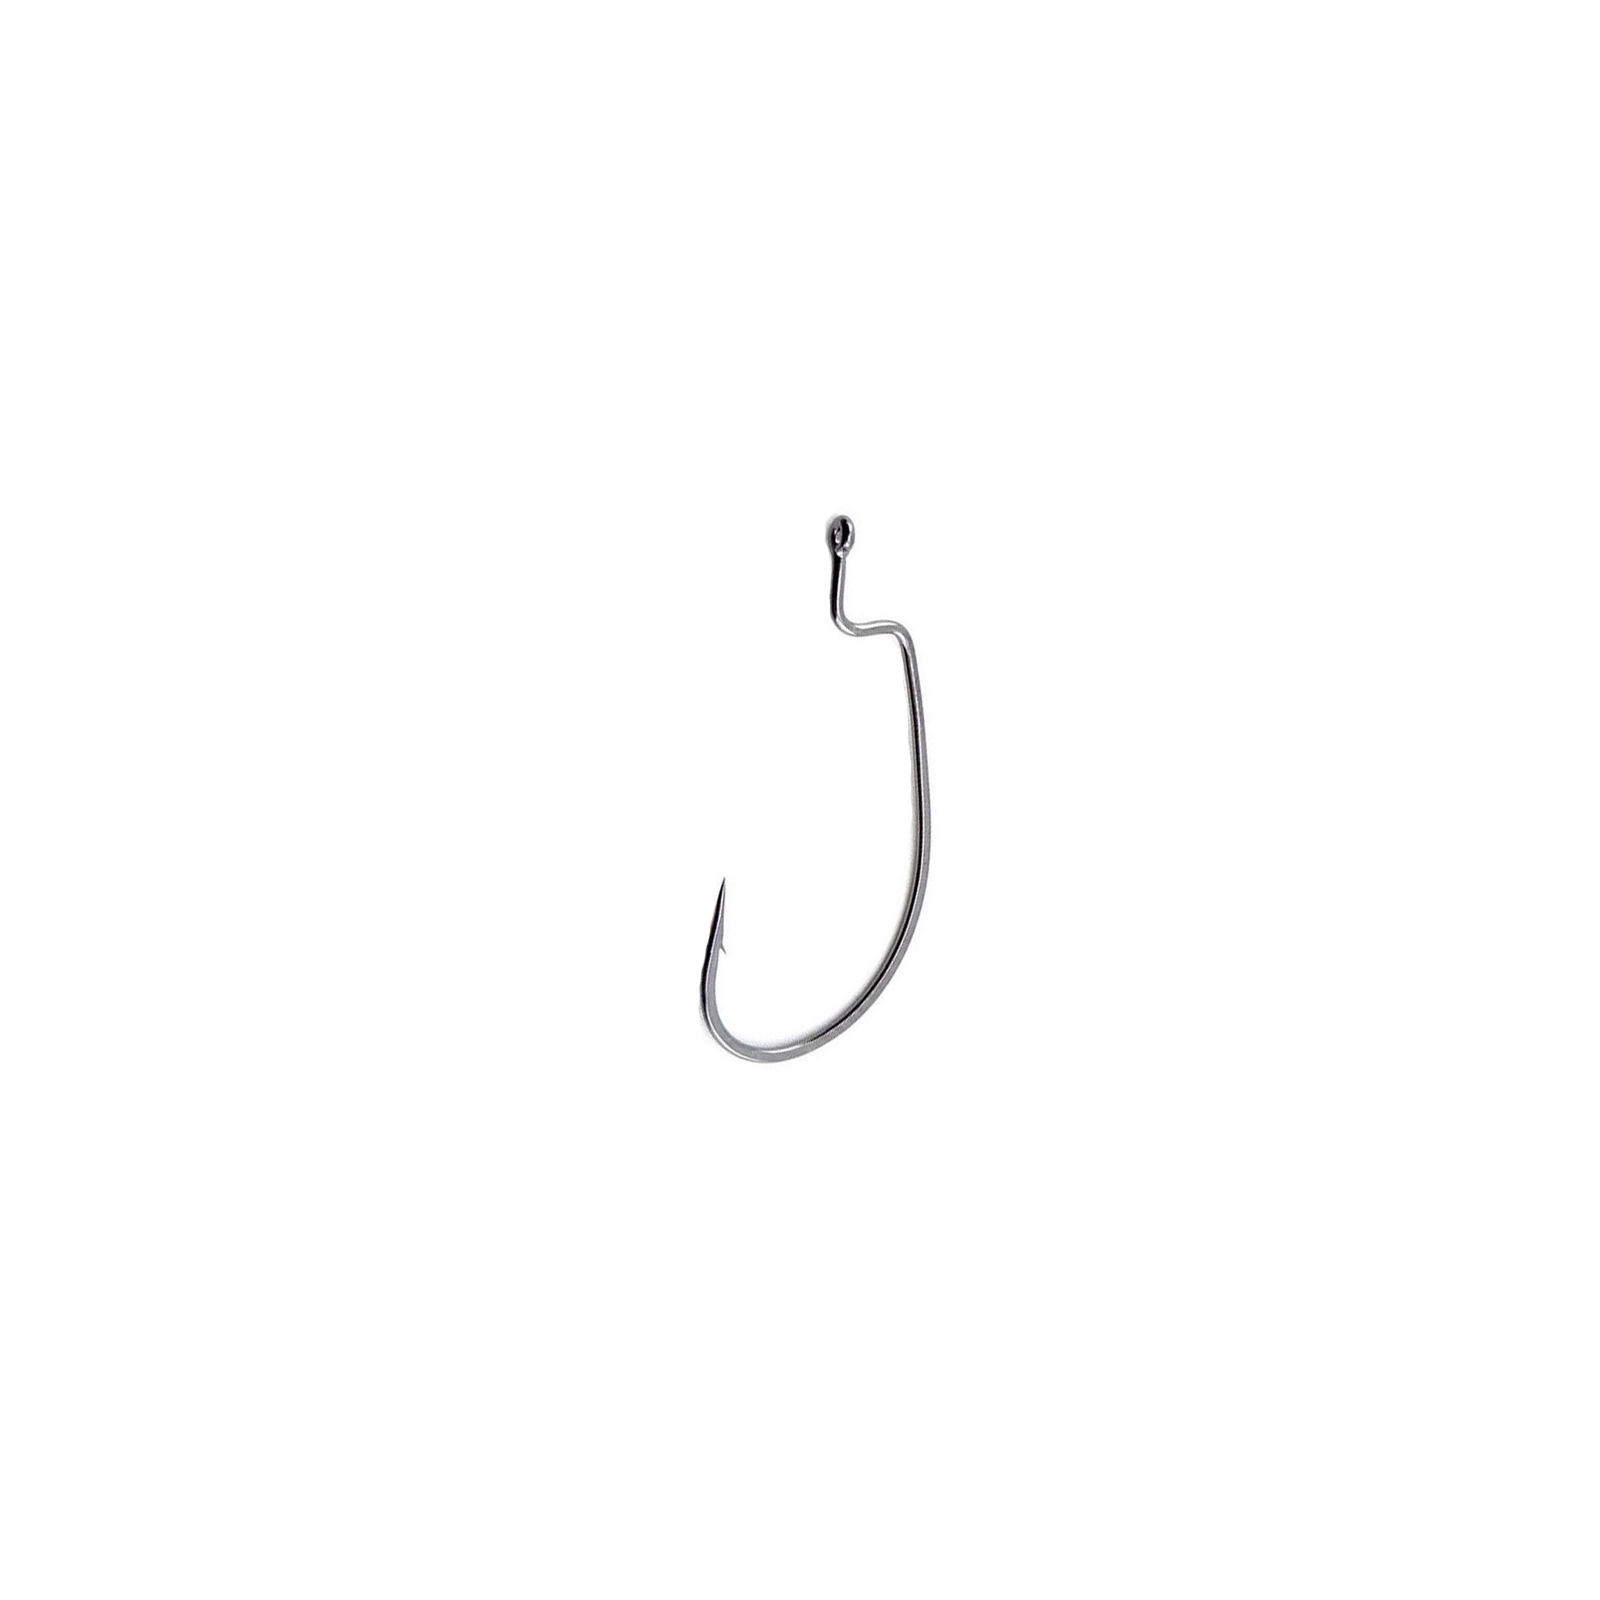 Гачок Decoy Worm 19 S.S. Hook 8, 10 шт (1562.02.59)